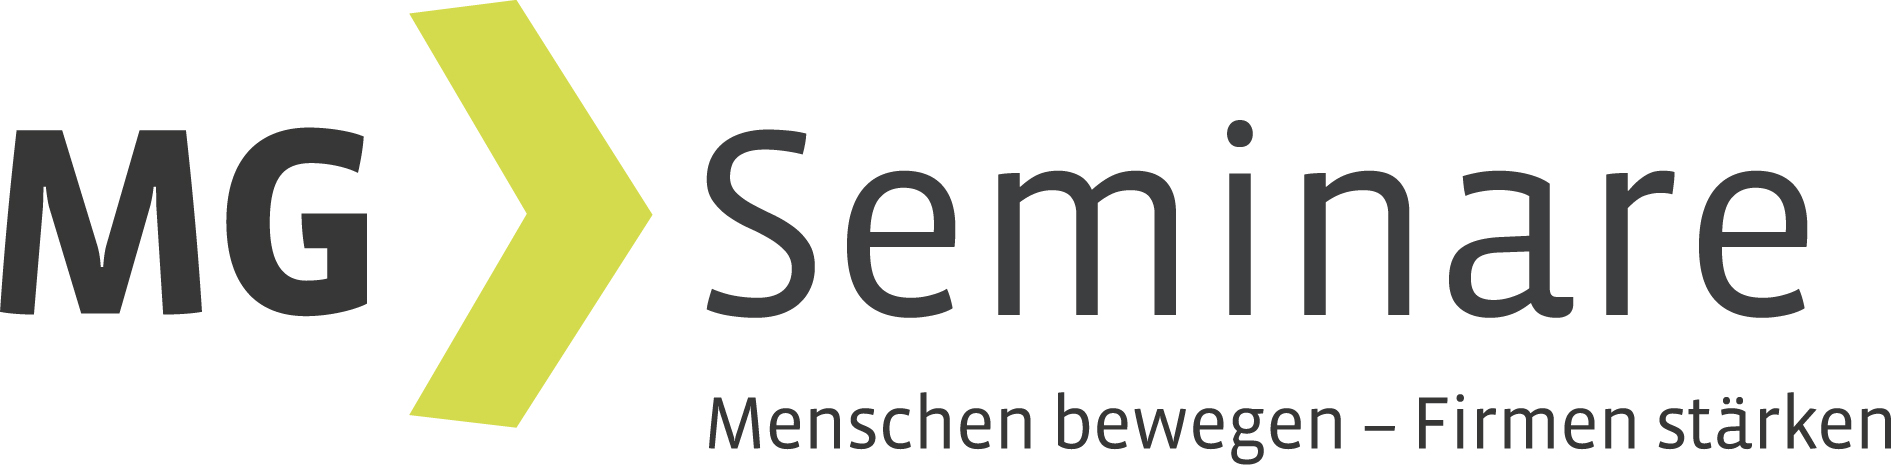 MG Seminare GmbH Inh. Markus Guttenson in Forchtenberg